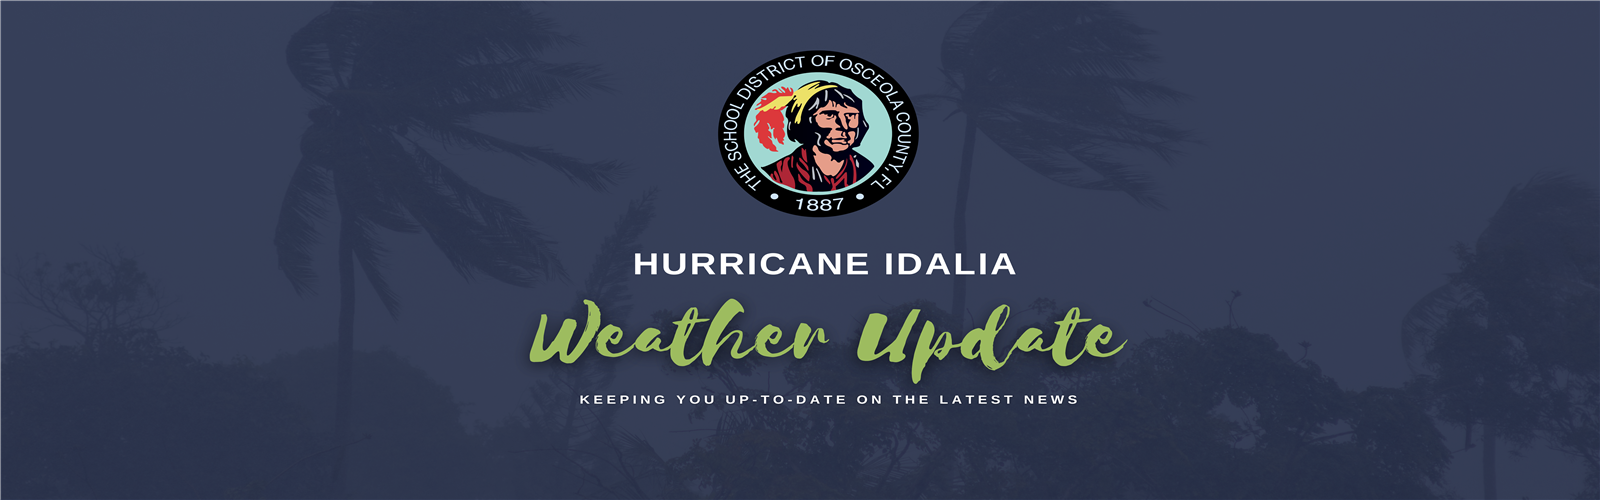 hurricane Idalia updates